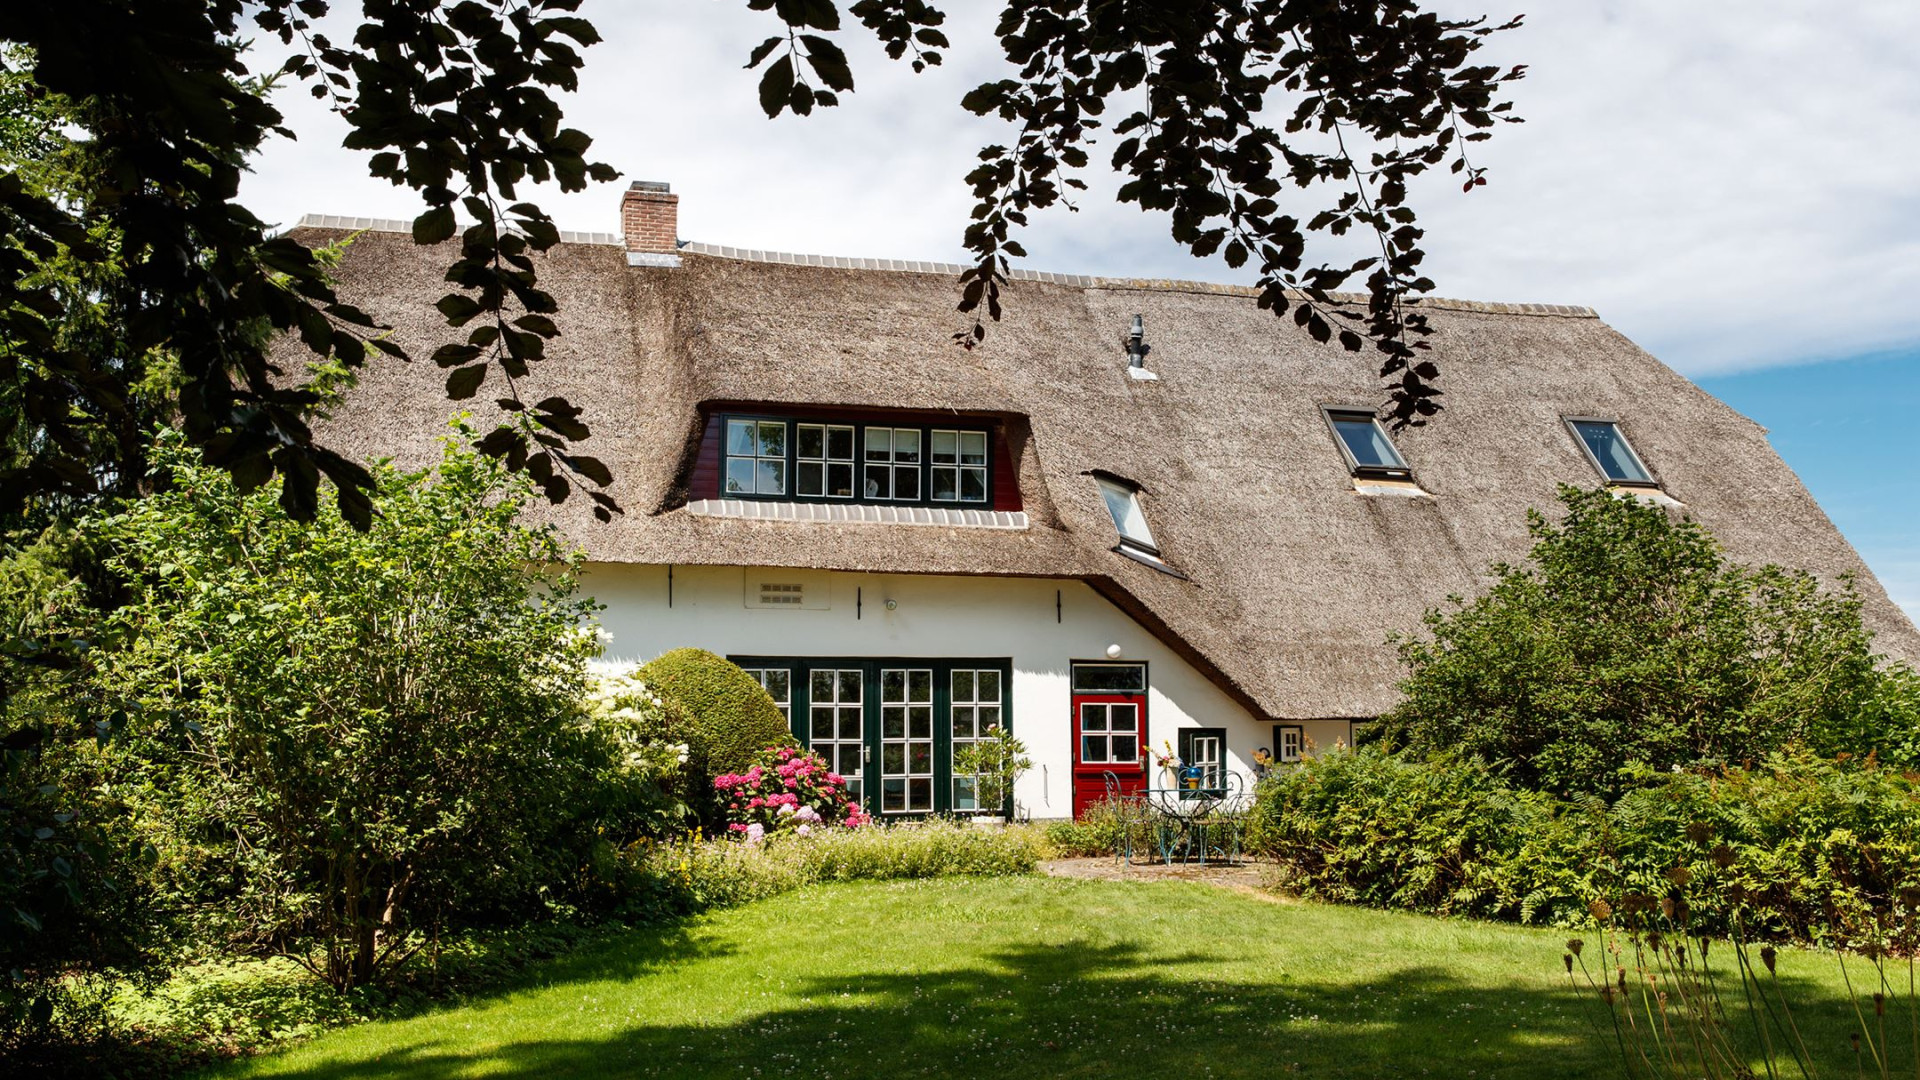 Ivo Niehe koopt deze prachtige woonboerderij. Zie foto's